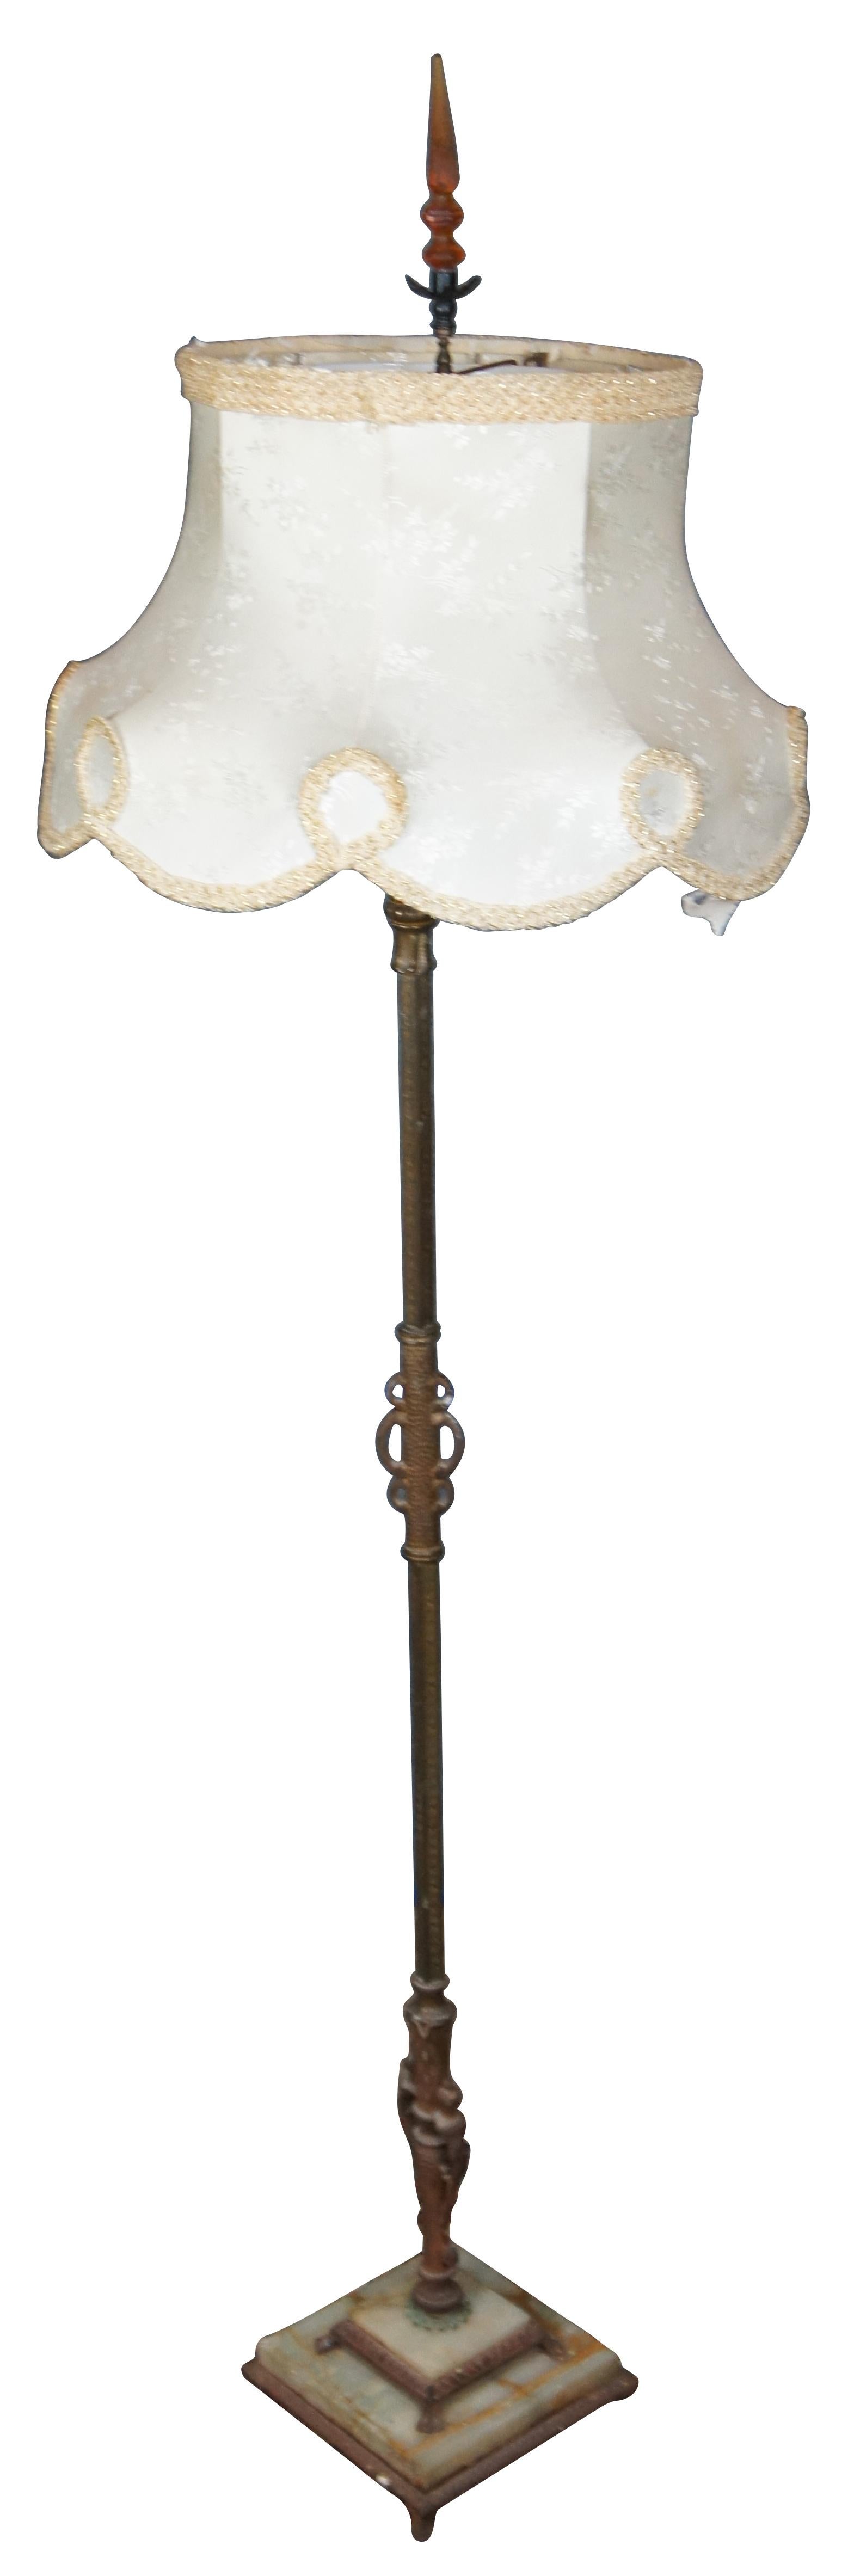 Große Stehlampe aus dem späten 19. und frühen 20. Jahrhundert mit einem Sockel aus Eisen und weißem Marmor, einem Messingkörper mit Kandelaberfassungen für drei kerzenförmige Glühbirnen und einem Fackelaufsatz mit Milchglasschirm, gekrönt von einem